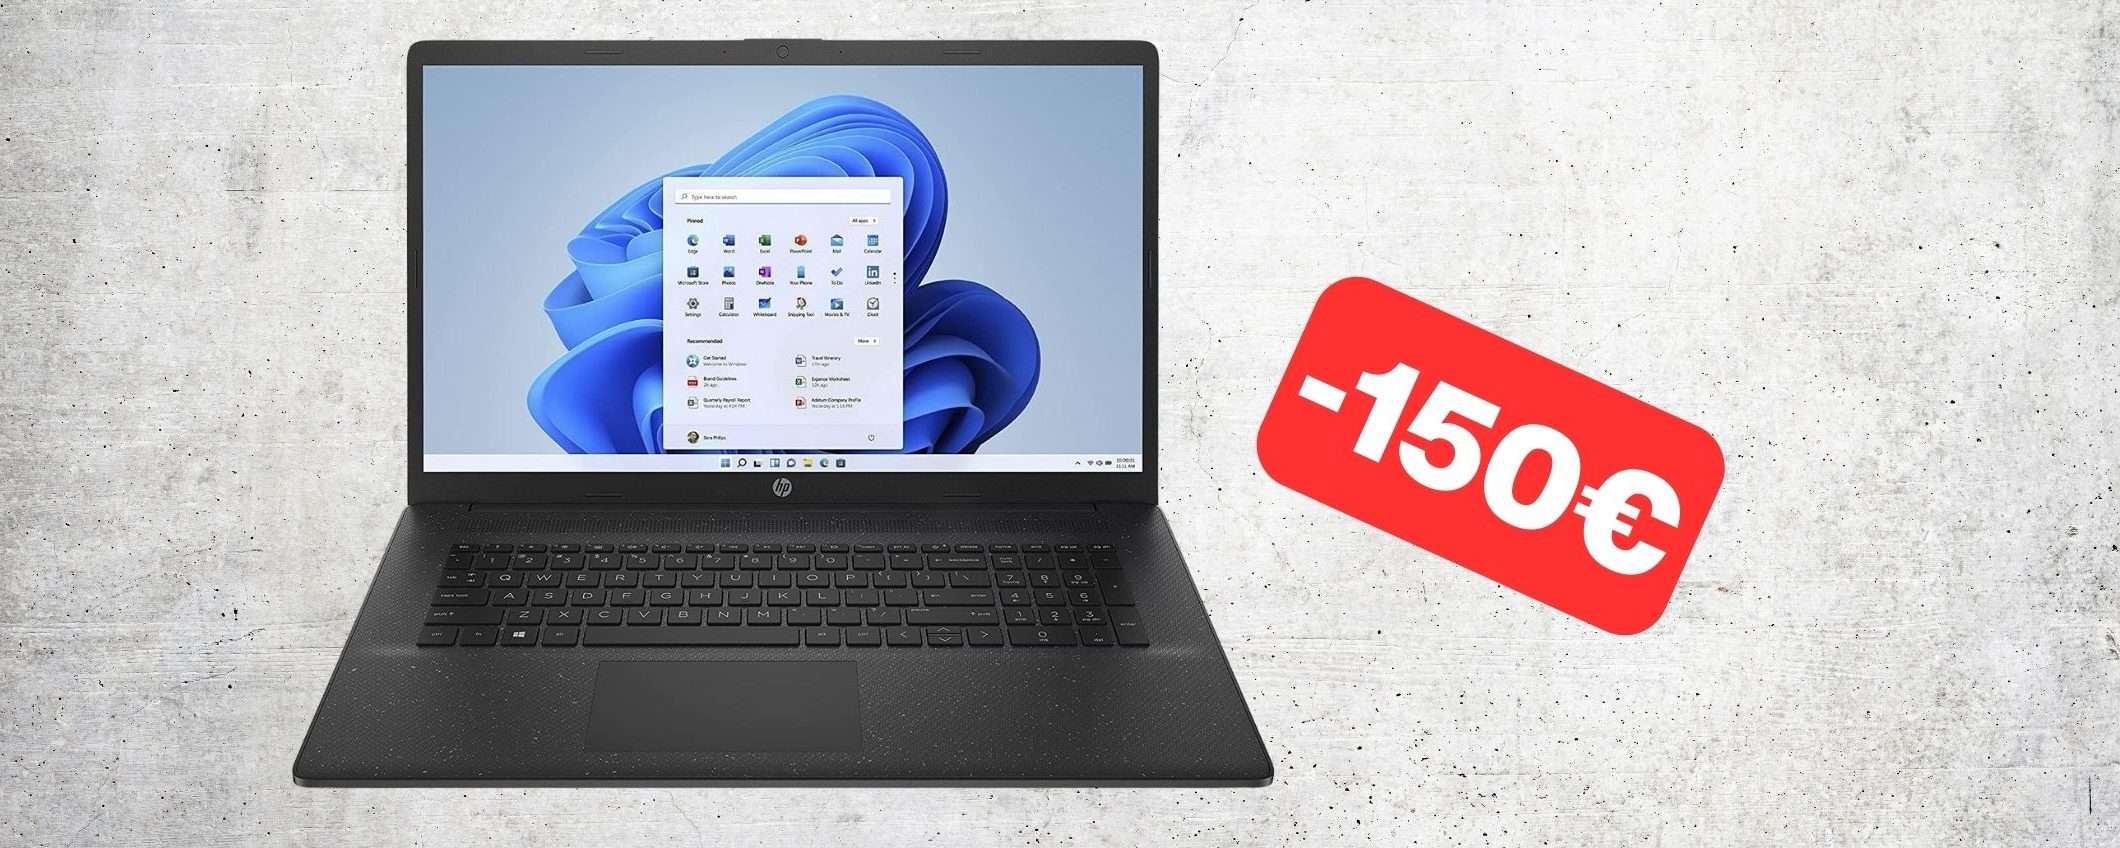 150€ di sconto per il Notebook HP con Ryzen 7, 16GB RAM e SSD 512GB NVMe